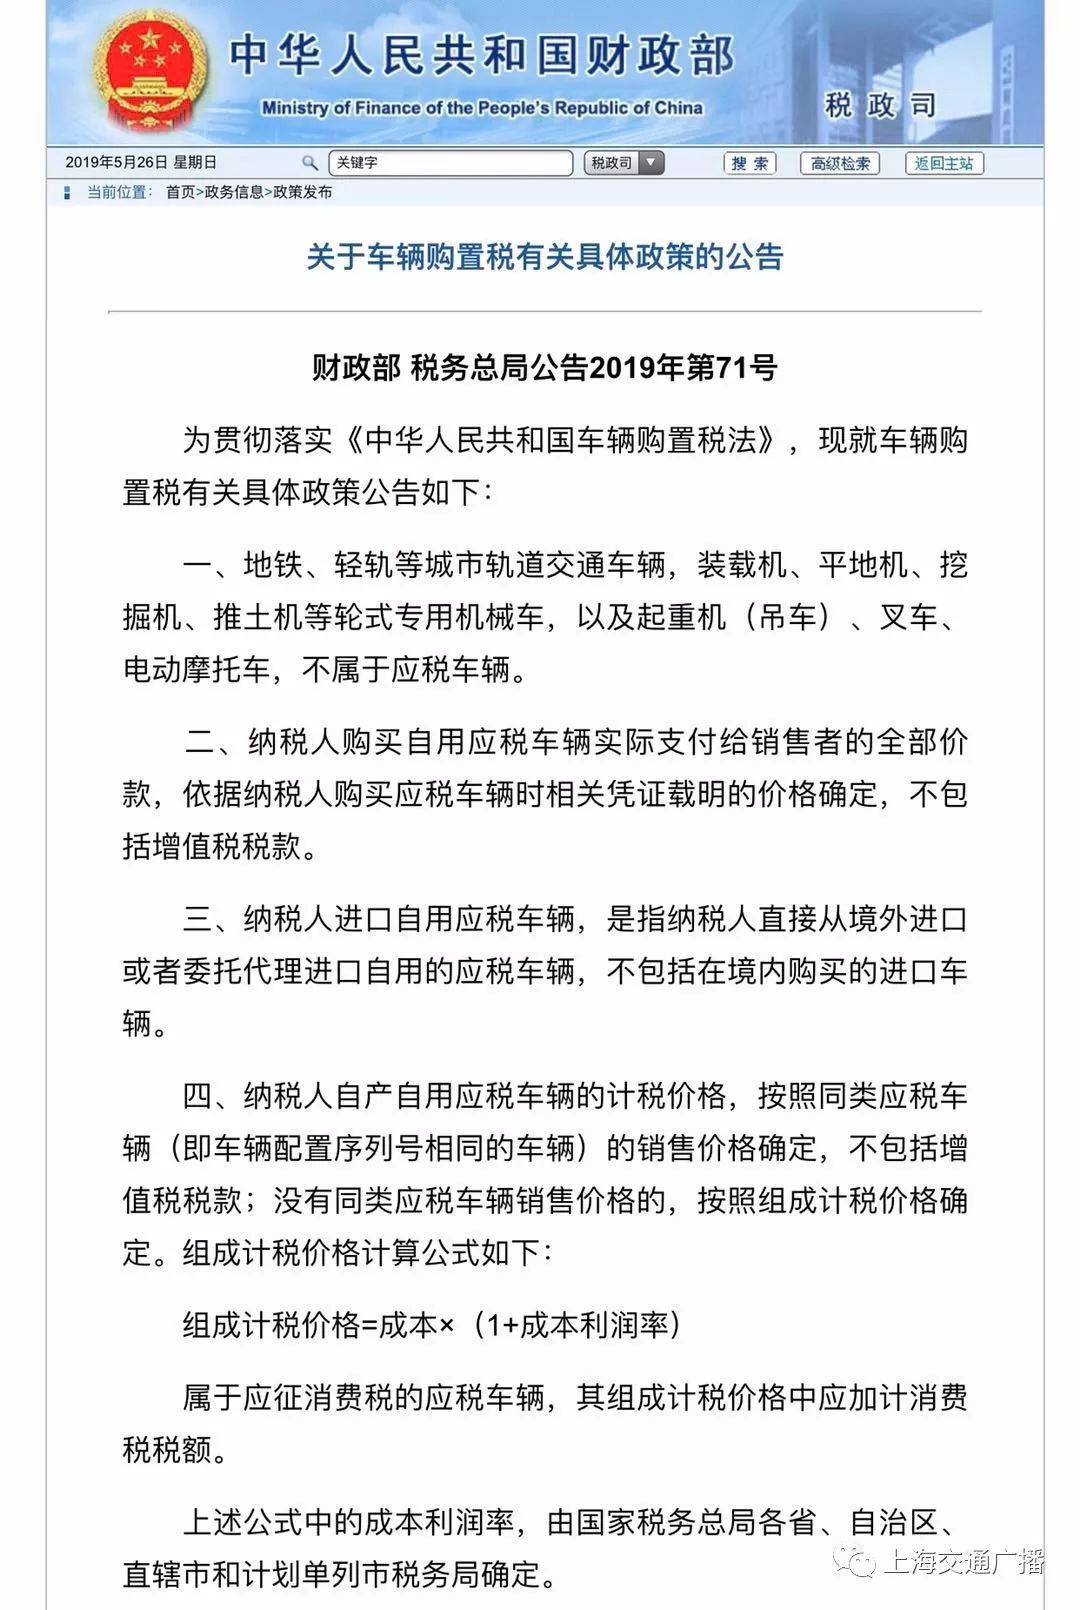 据了解,新的《中华人民共和国车辆购置税法》将于2019年7月1日起正式